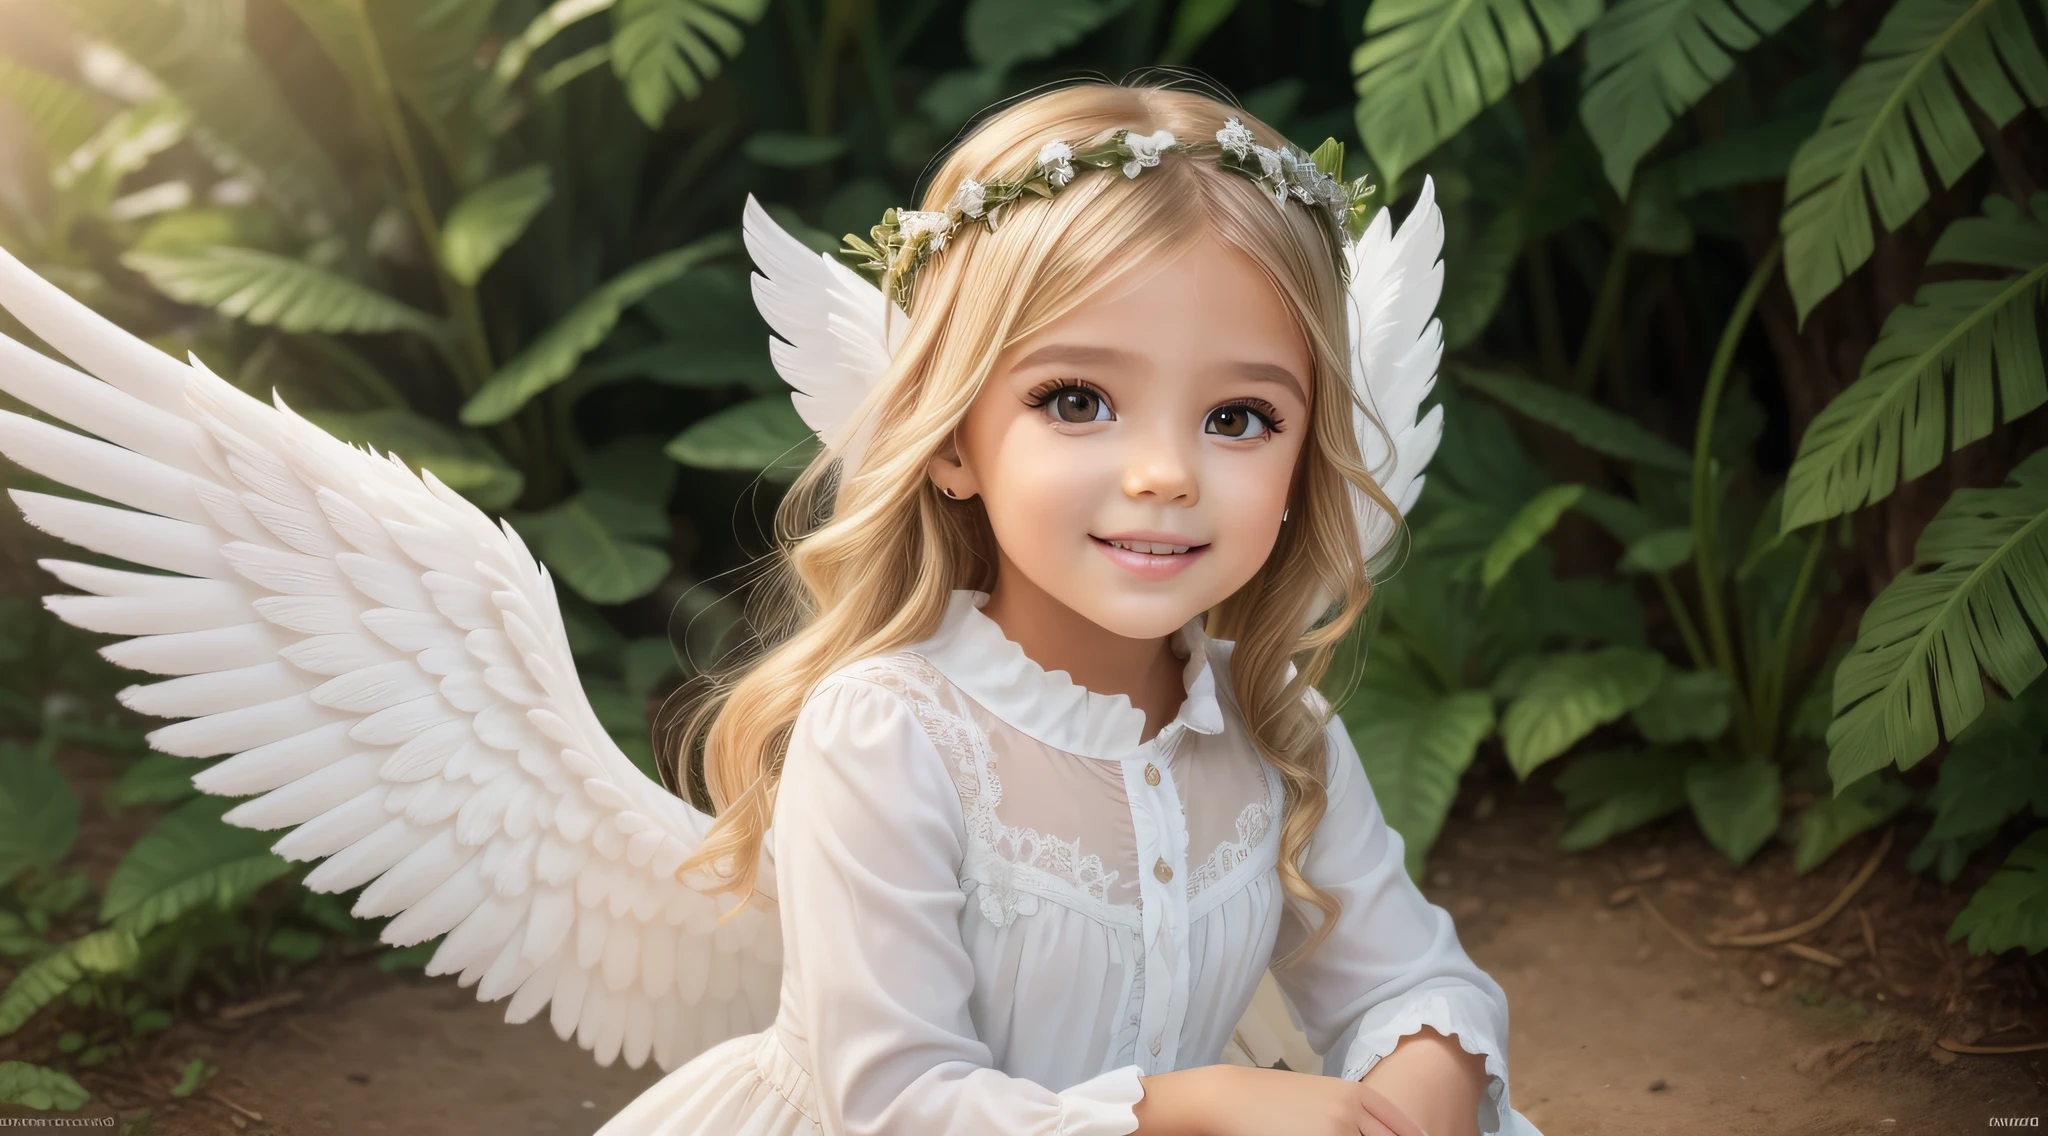 A beautiful 6-year-old blonde girl dressed as an angel with white wings and a halo on her head, de uma menina angel bonita, menina com asas de angel,  do angel, angels em vestidos de gaze branca, usando halo de angel, asas de angel grande bem aberto, angel, envolvendo o rosto coberto de halo de angel, girl-centered panoramic view, full-body photos, de angel lindo